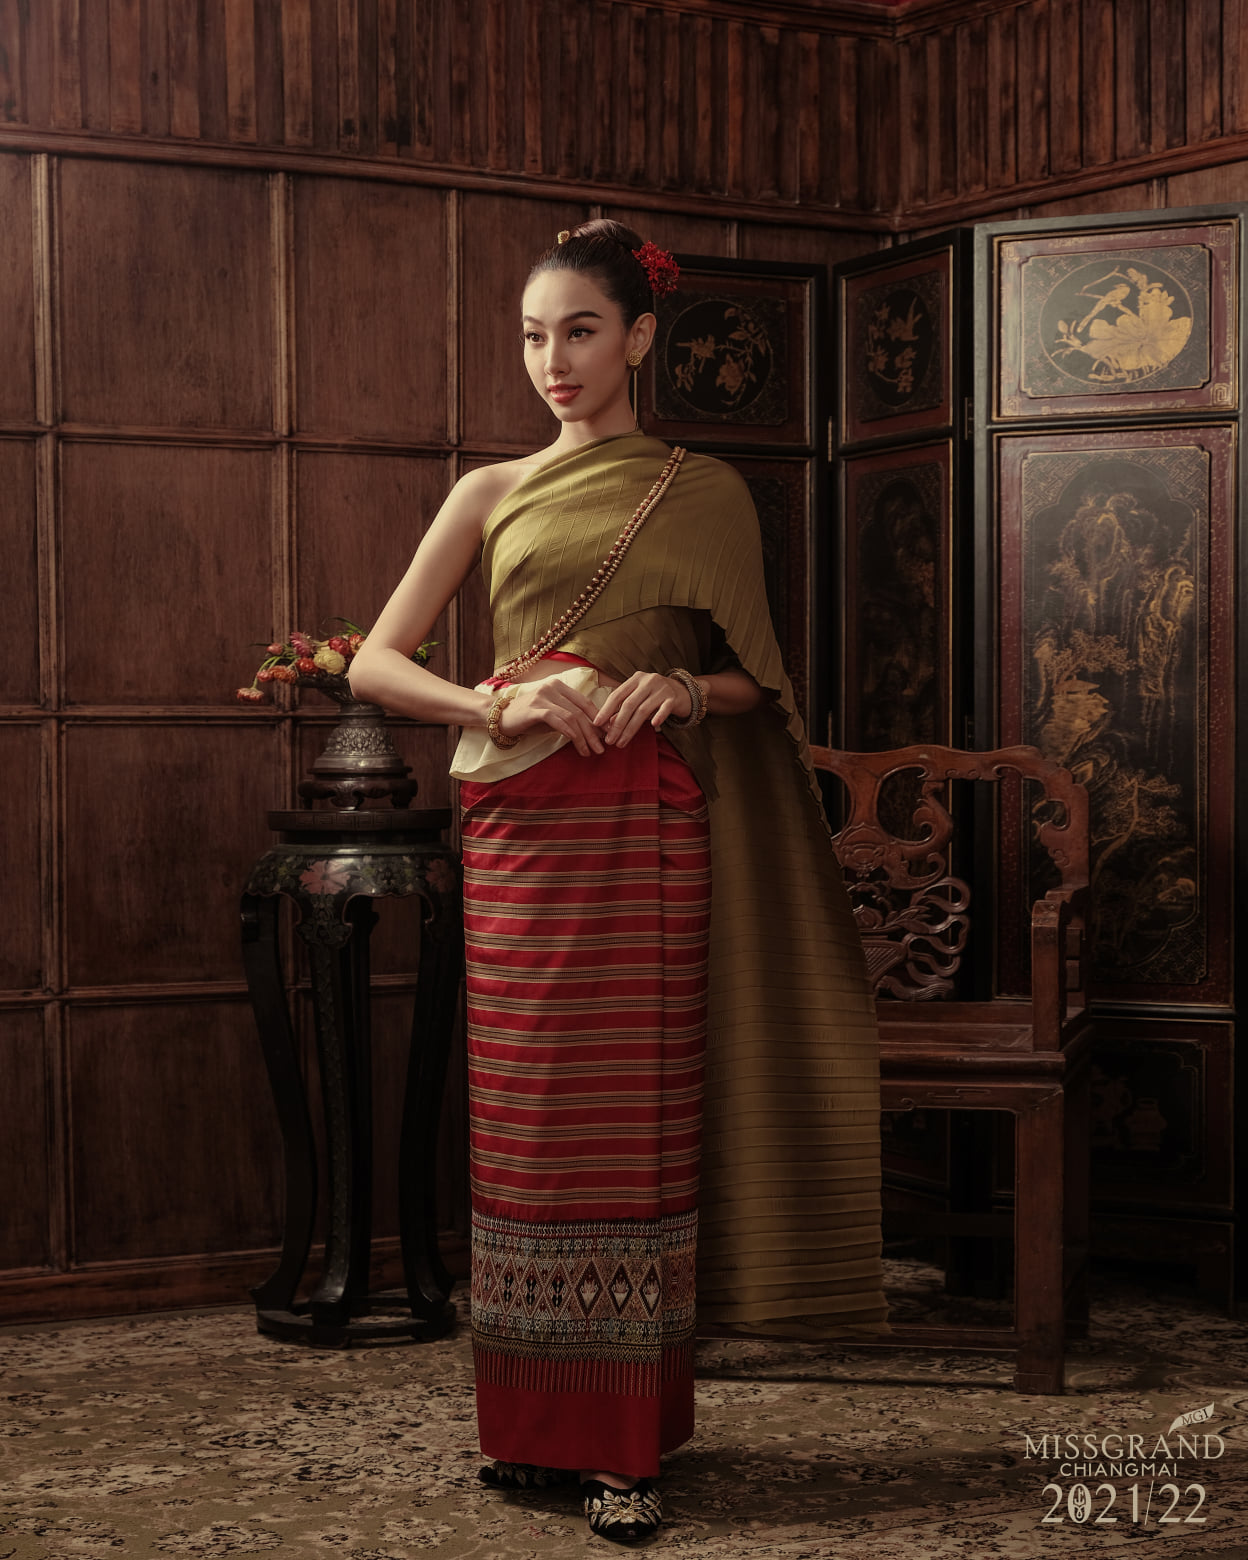 Hoa hậu Thuỳ Tiên mặc trang phục truyền thống Thái Lan cực xinh, fan liền đề nghị 'đi đóng phim Thái thôi chị' - Ảnh 5